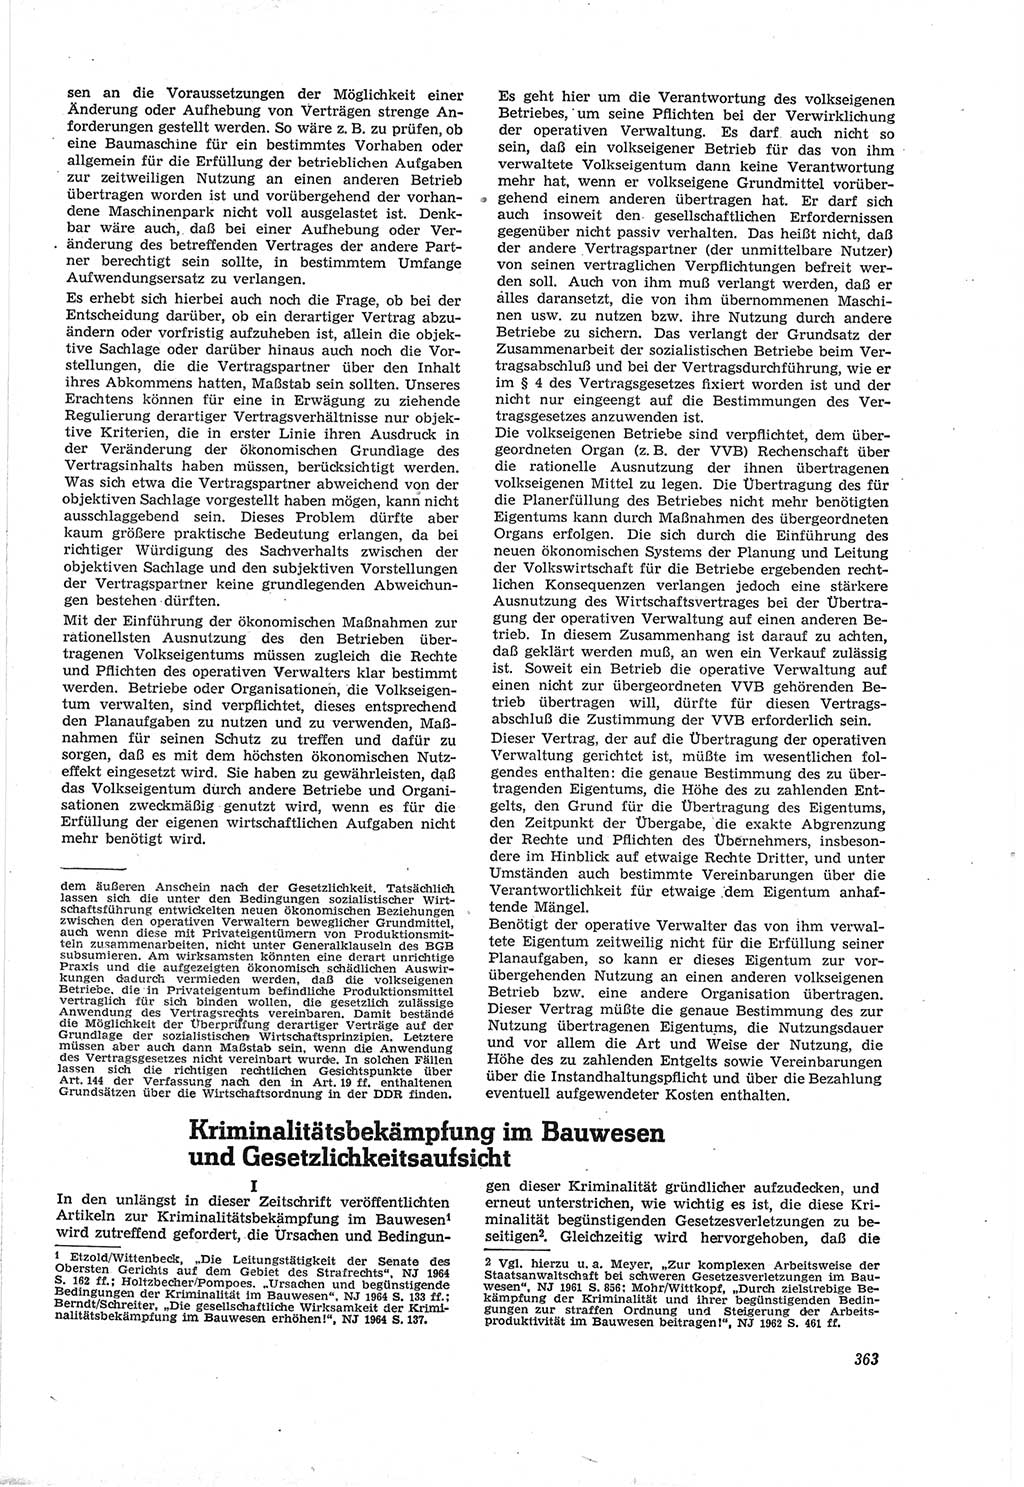 Neue Justiz (NJ), Zeitschrift für Recht und Rechtswissenschaft [Deutsche Demokratische Republik (DDR)], 18. Jahrgang 1964, Seite 363 (NJ DDR 1964, S. 363)